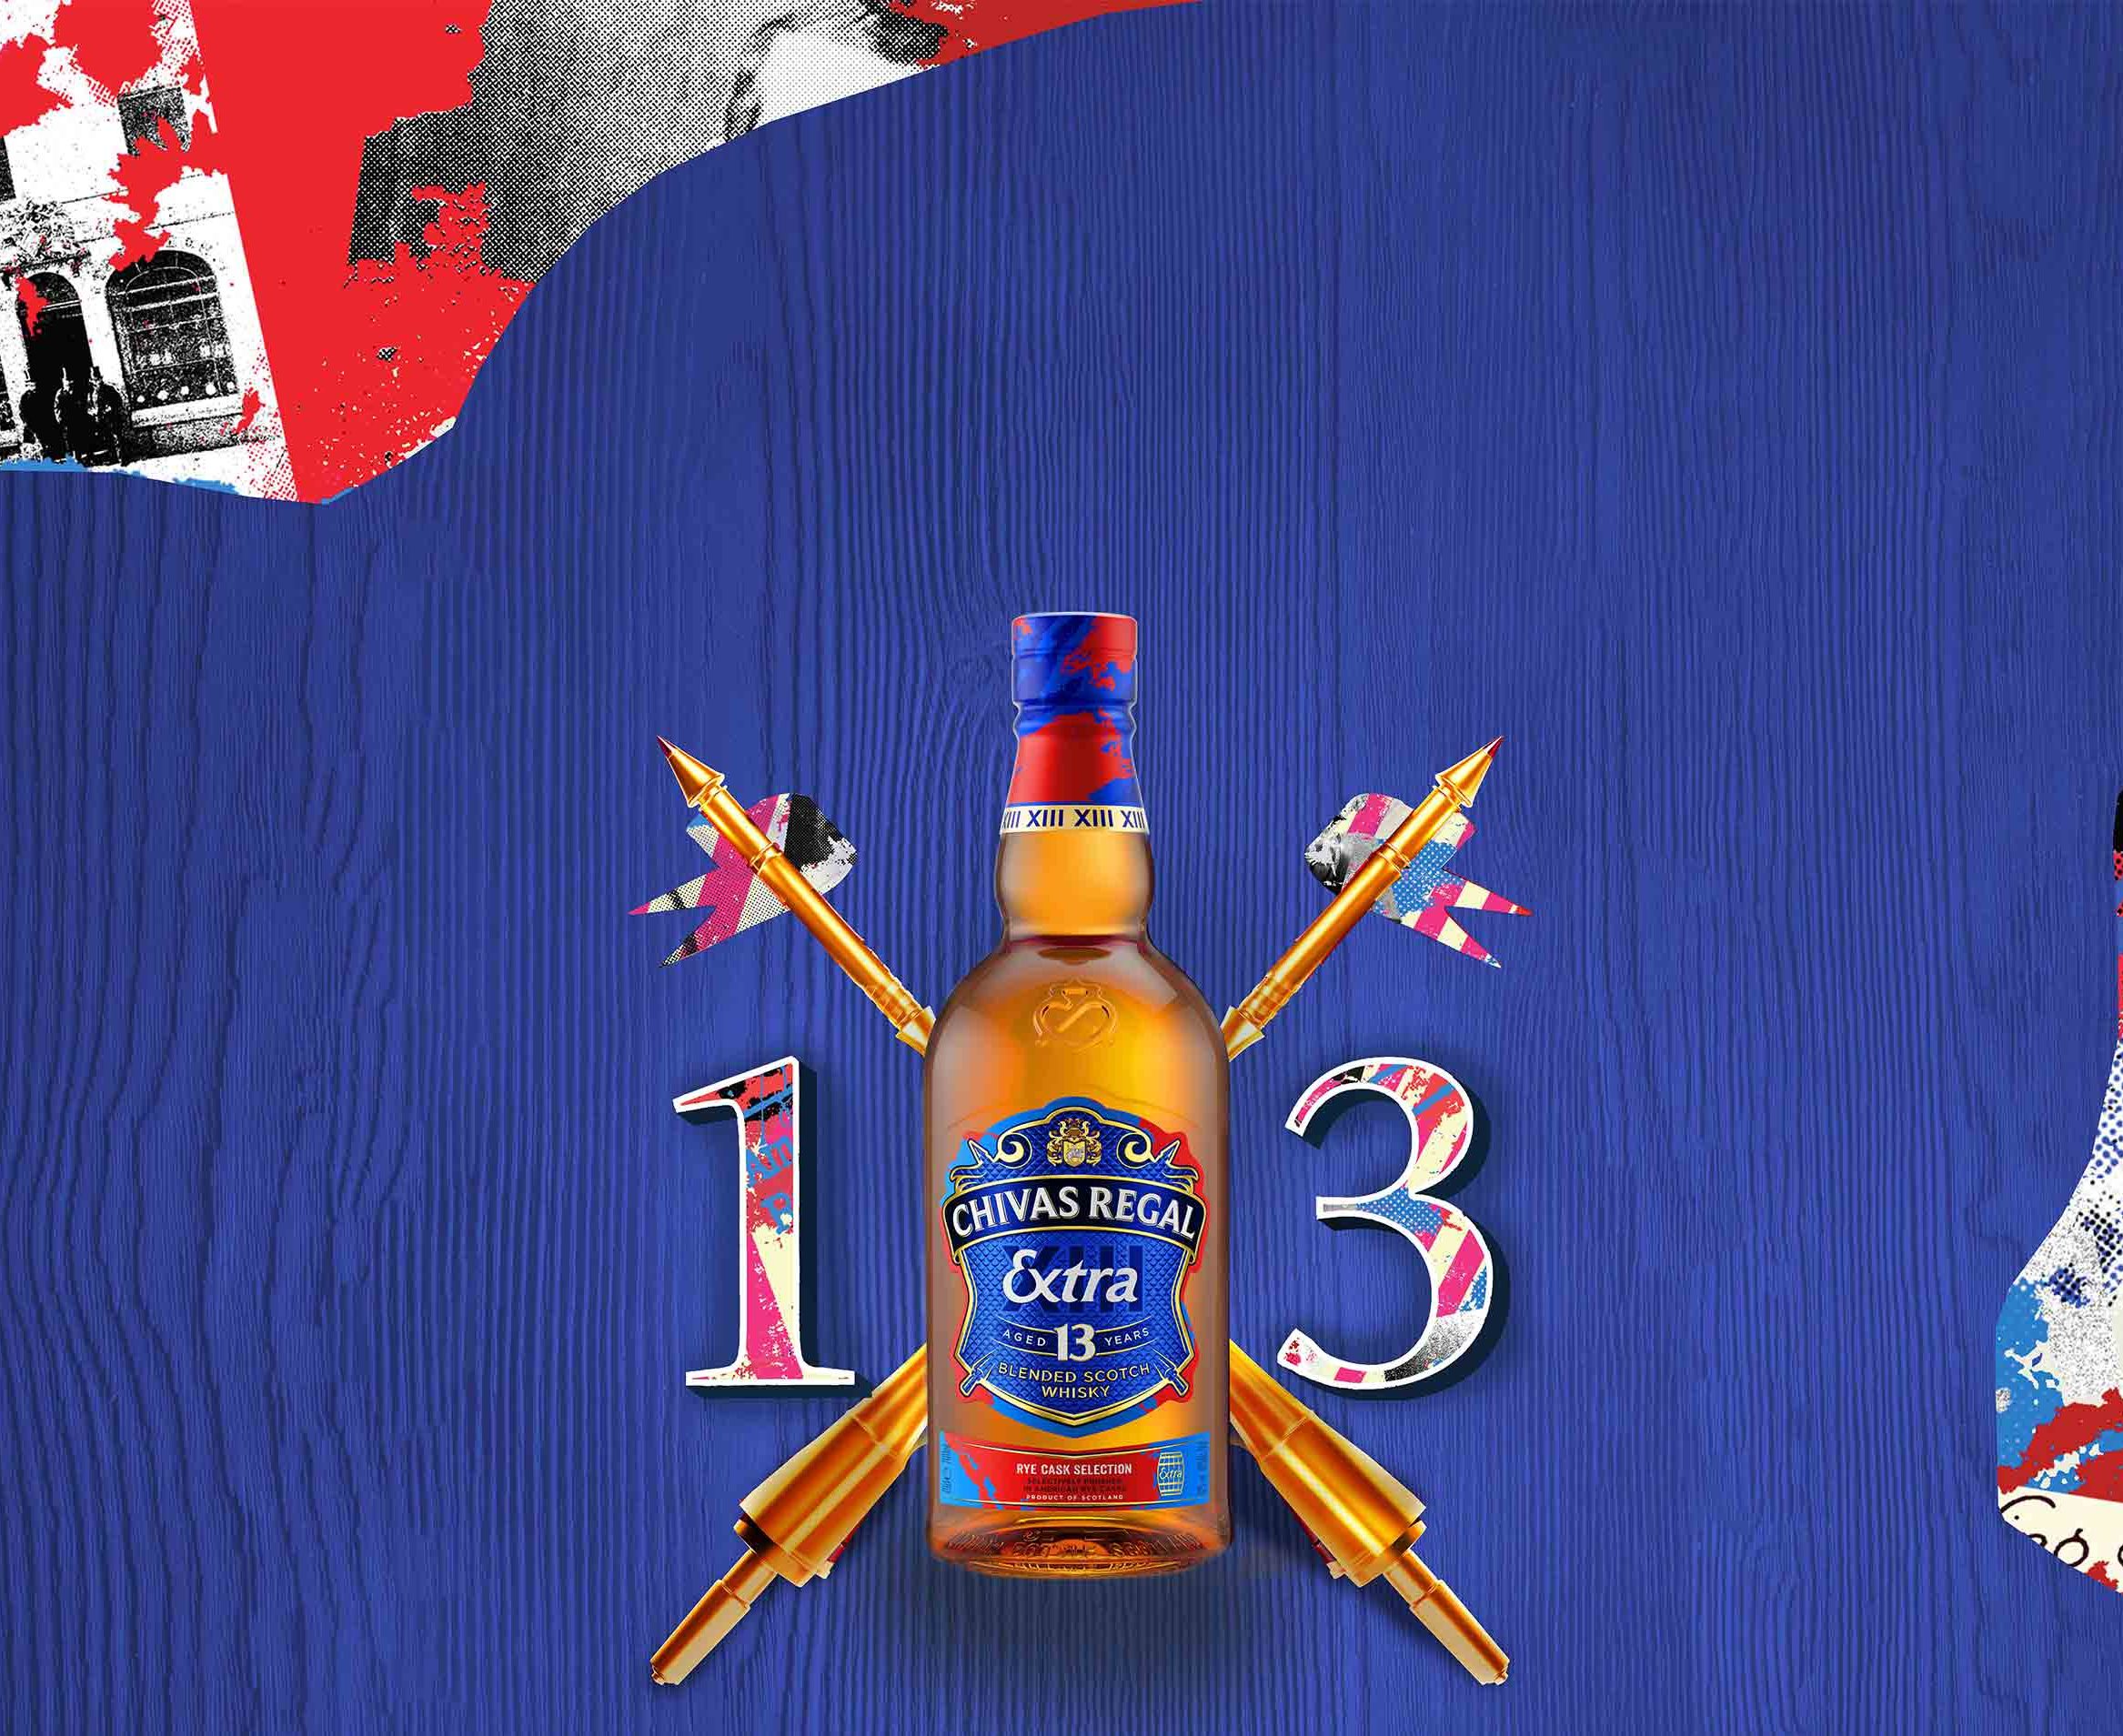 Chivas Extra 13 Rye Blended Scotch Whisky